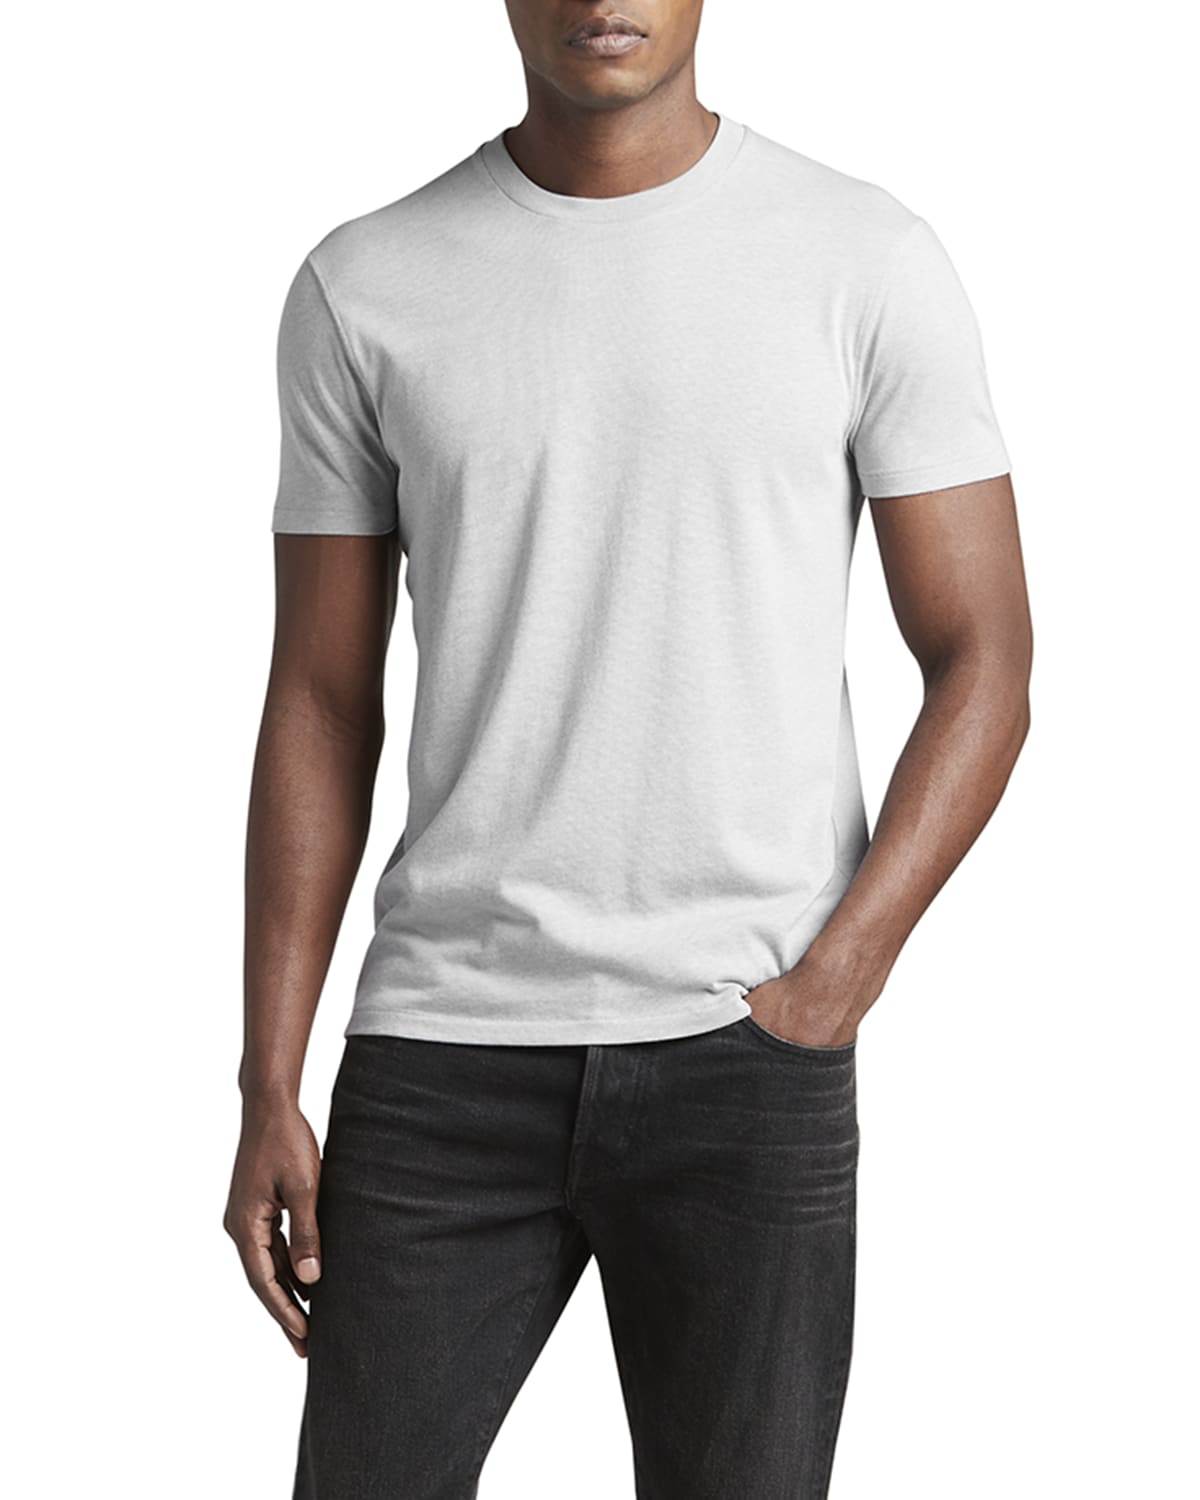 Tom Ford Tshirt | Neiman Marcus